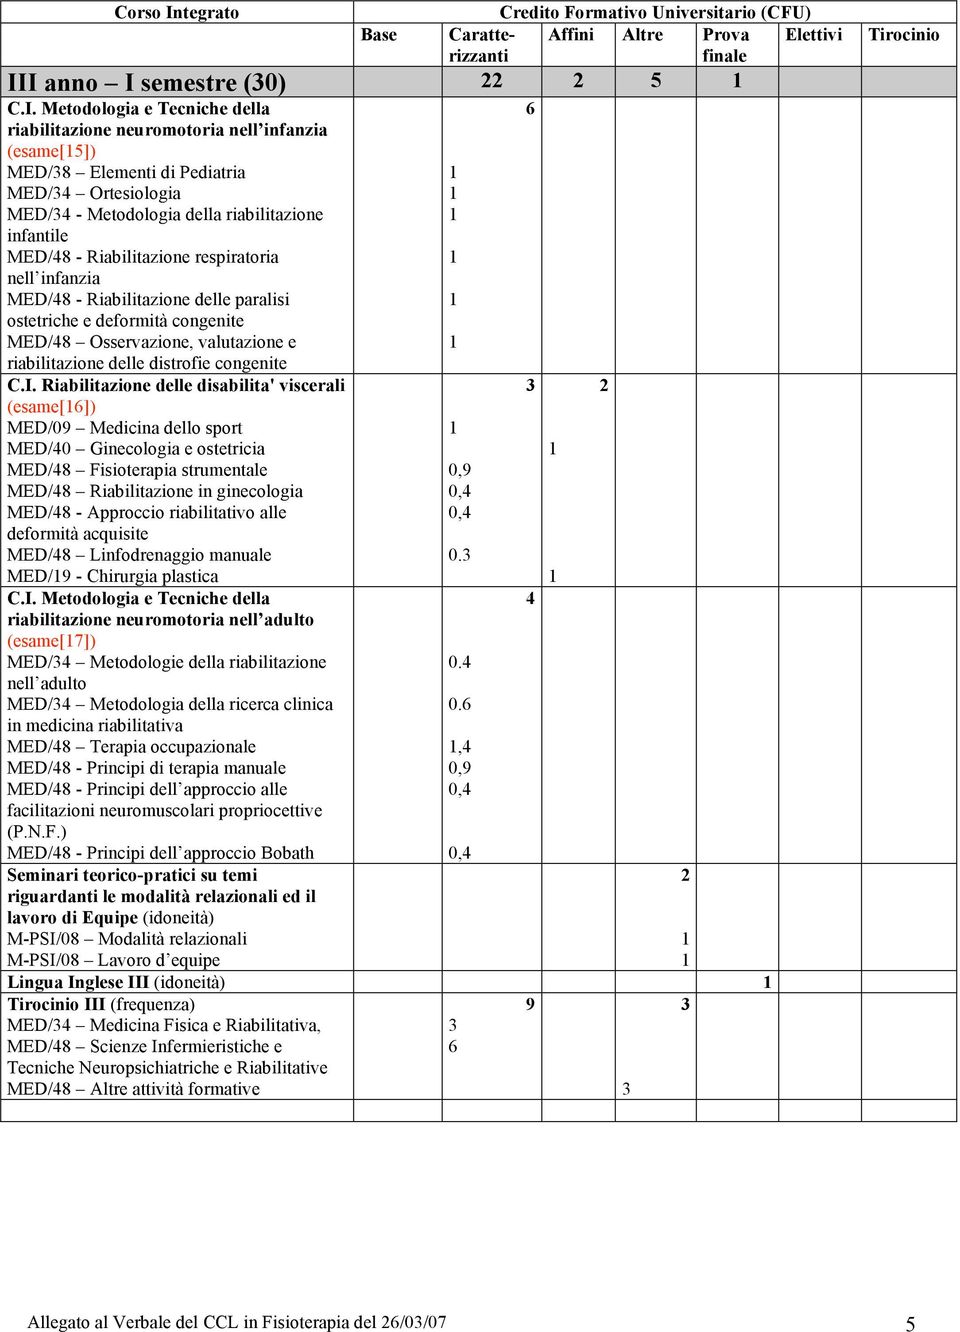 Riabilitazione delle disabilita' viscerali (esame[]) MED/09 Medicina dello sport MED/0 Ginecologia e ostetricia MED/8 Fisioterapia strumentale MED/8 Riabilitazione in ginecologia MED/8 - Approccio